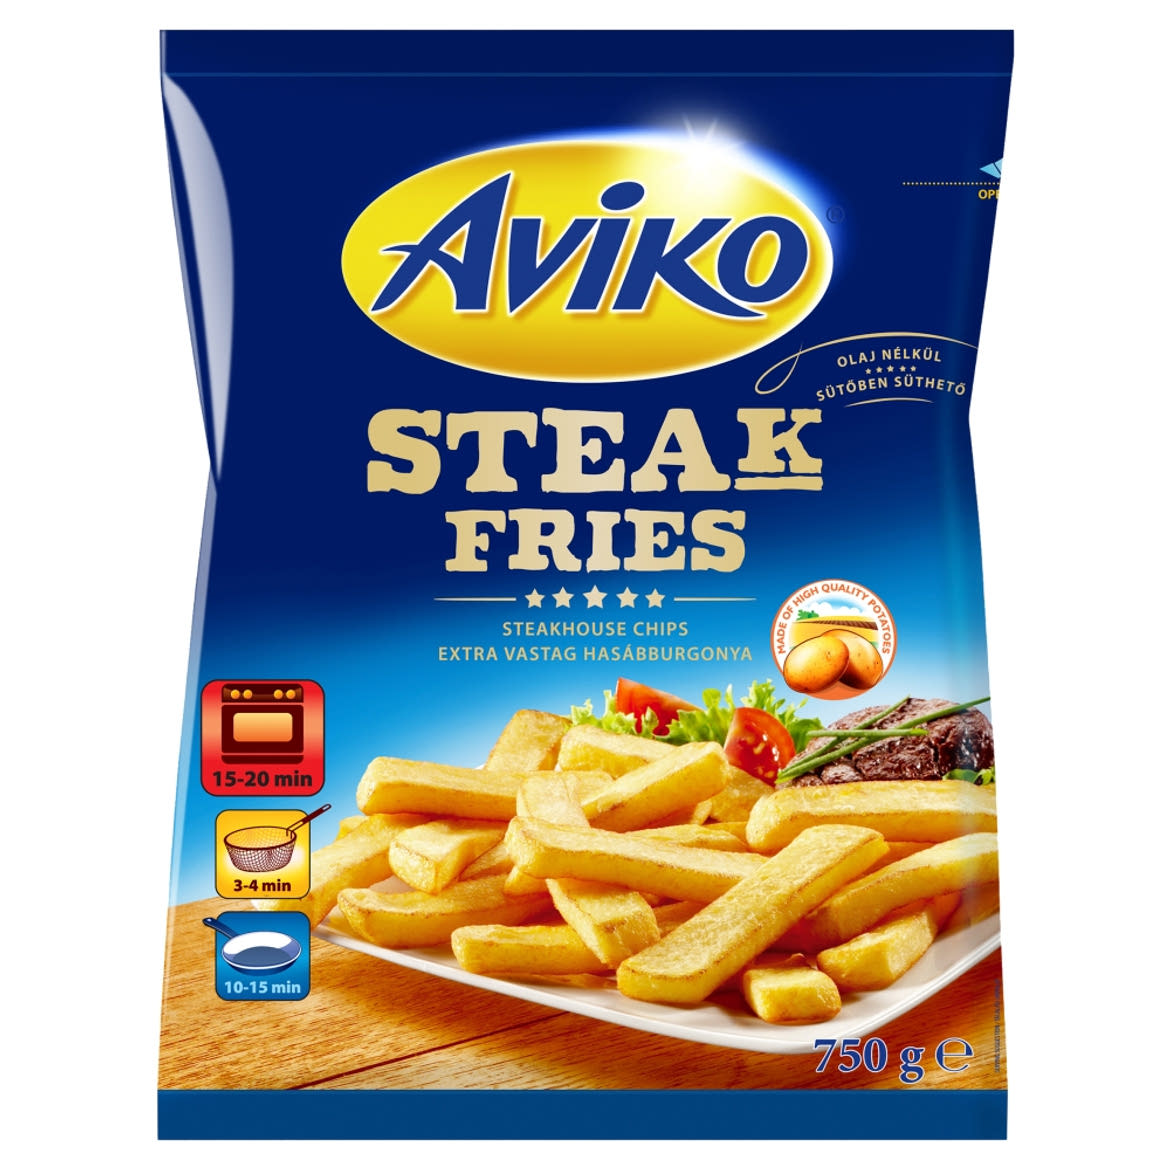 Aviko Steak Fries elősütött és gyorsfagyasztott extra vastag hasábburgonya